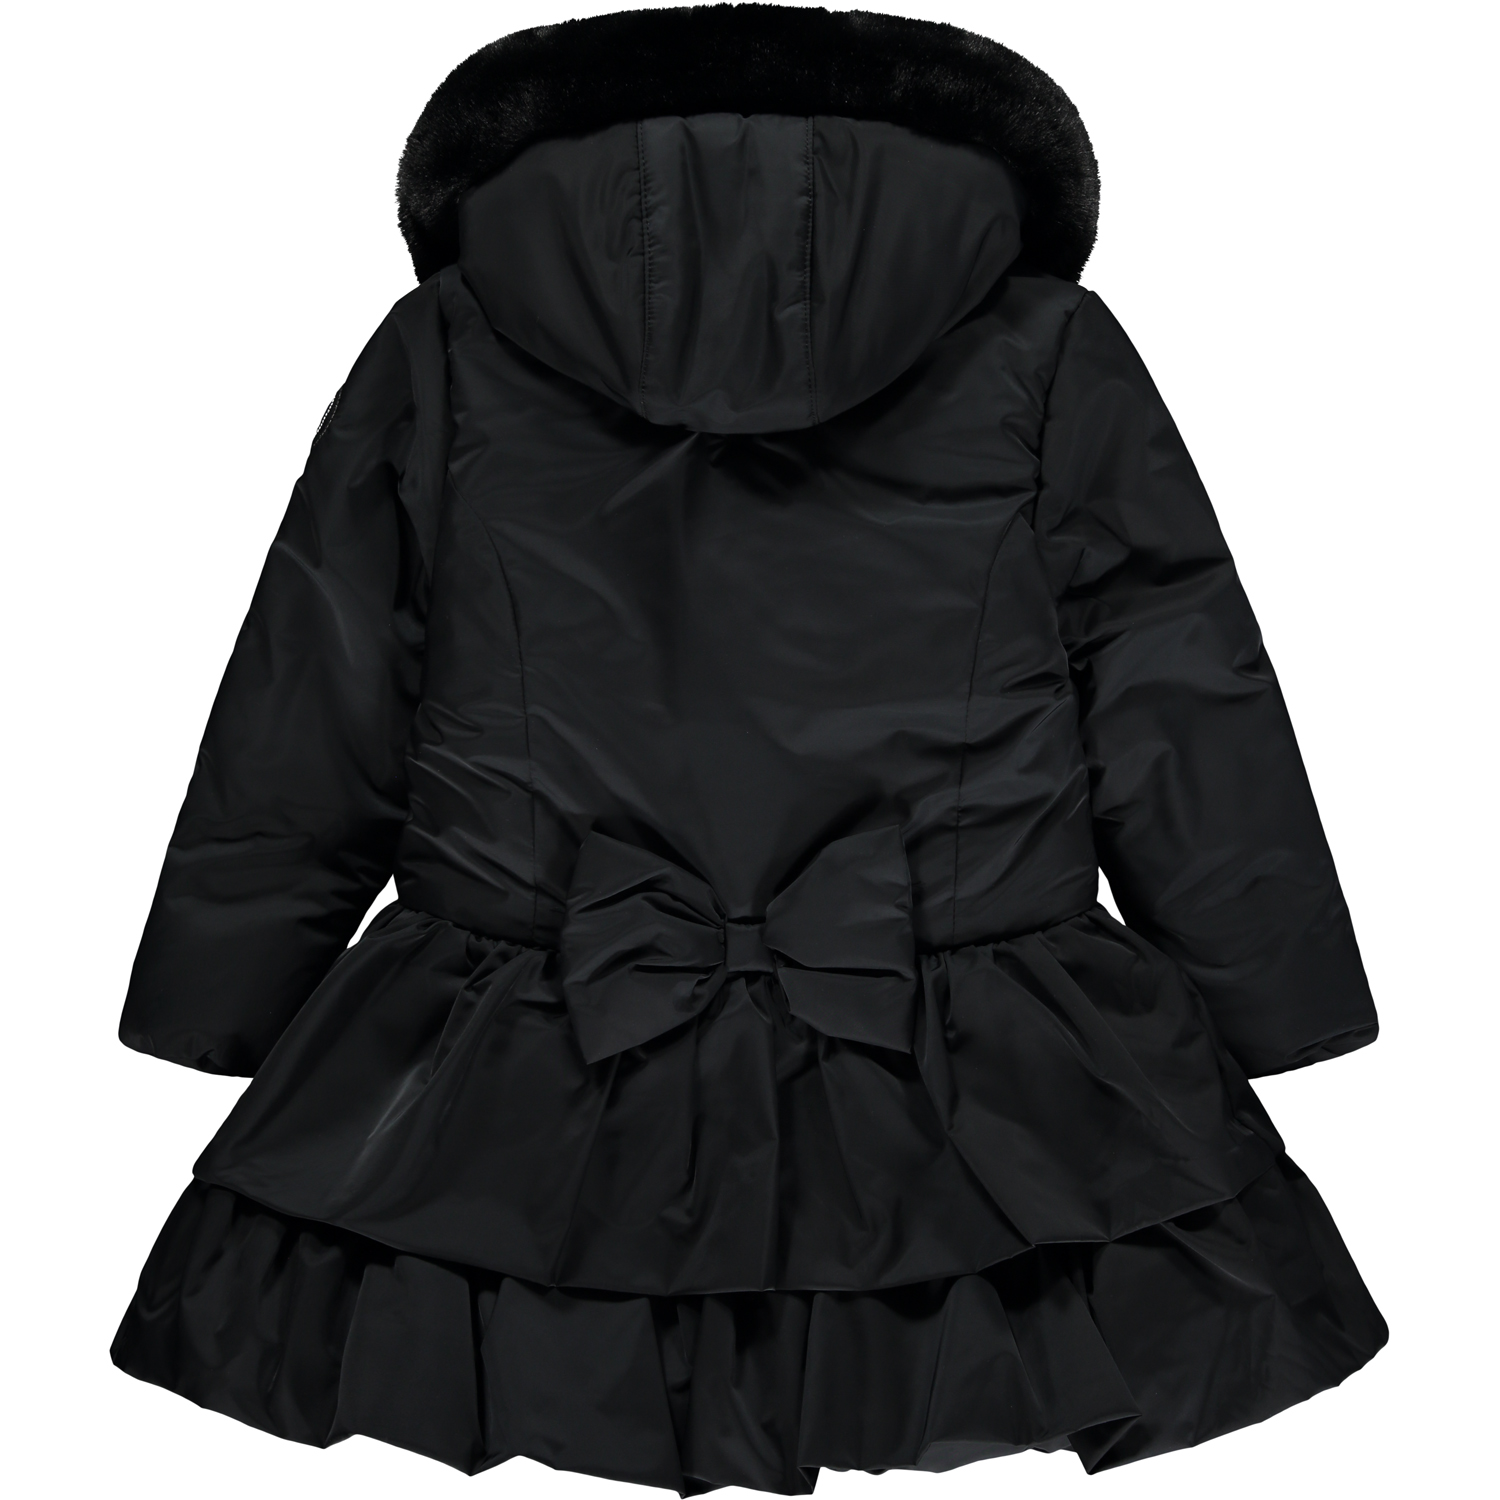 A’dee Baroque Love Serena zwarte winterjas met bontkraag en details achterkant